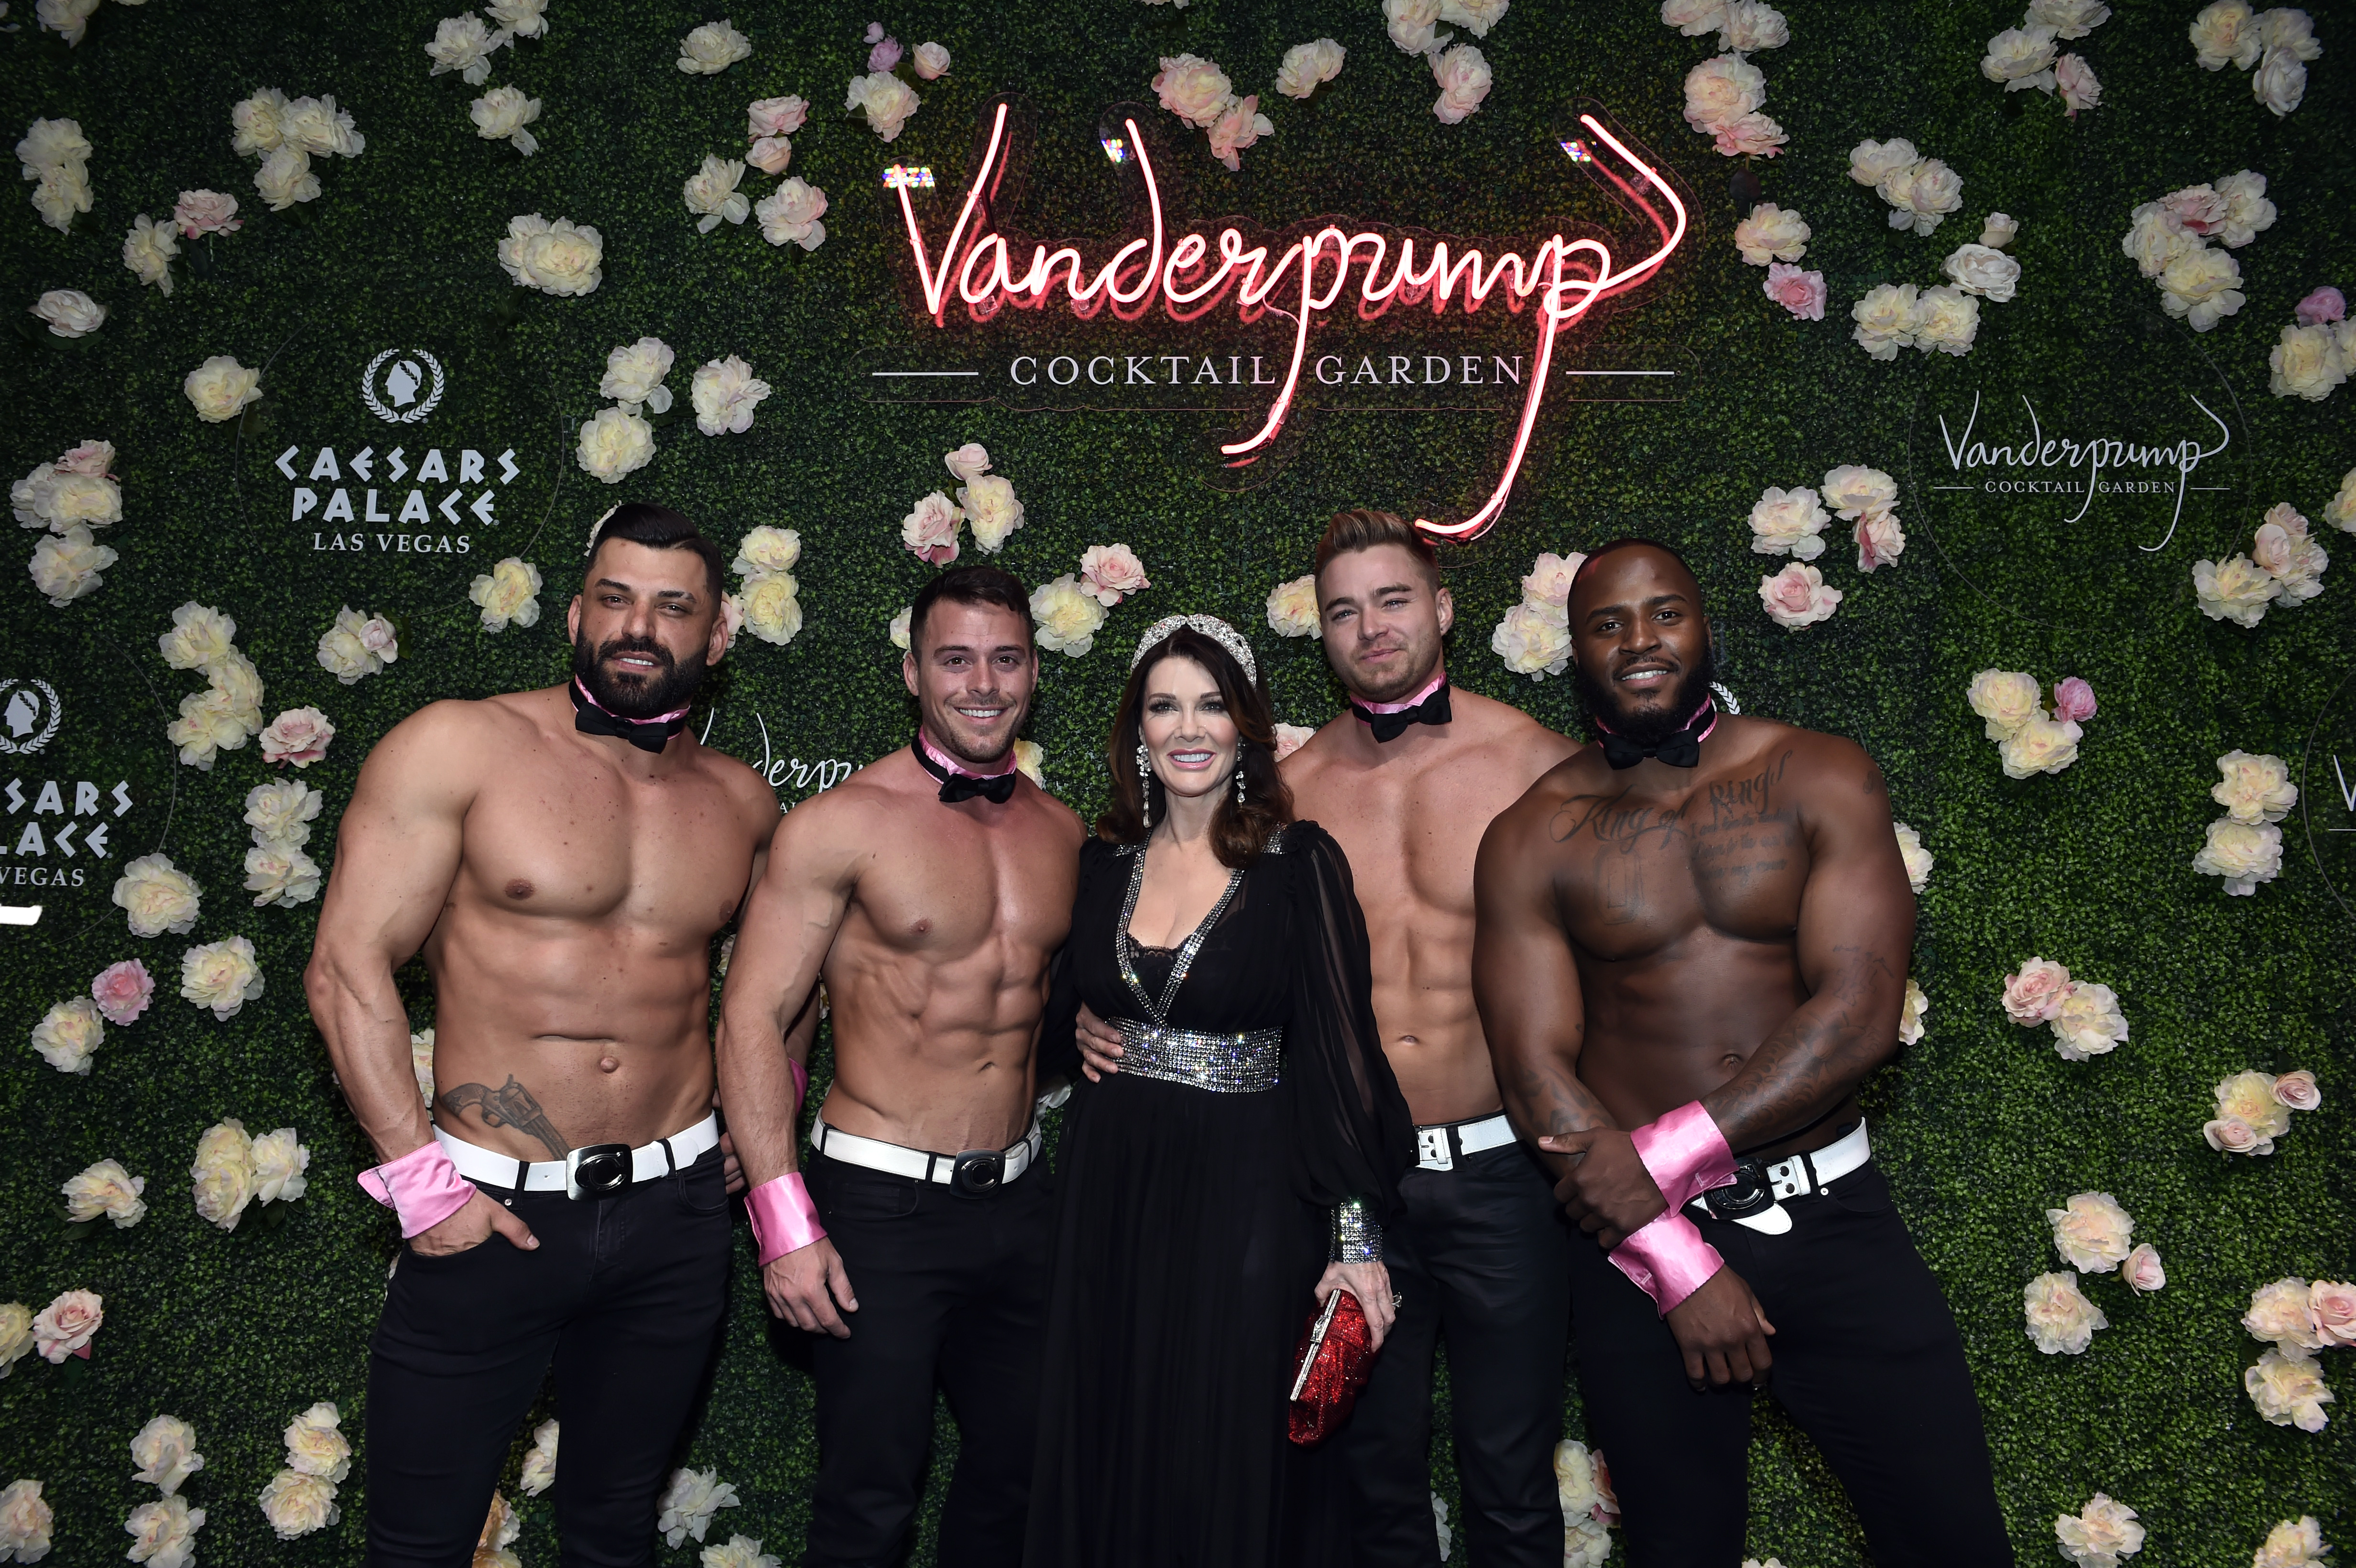 Lisa Vanderpump to Open Vanderpump Cocktail Garden in Las Vegas in